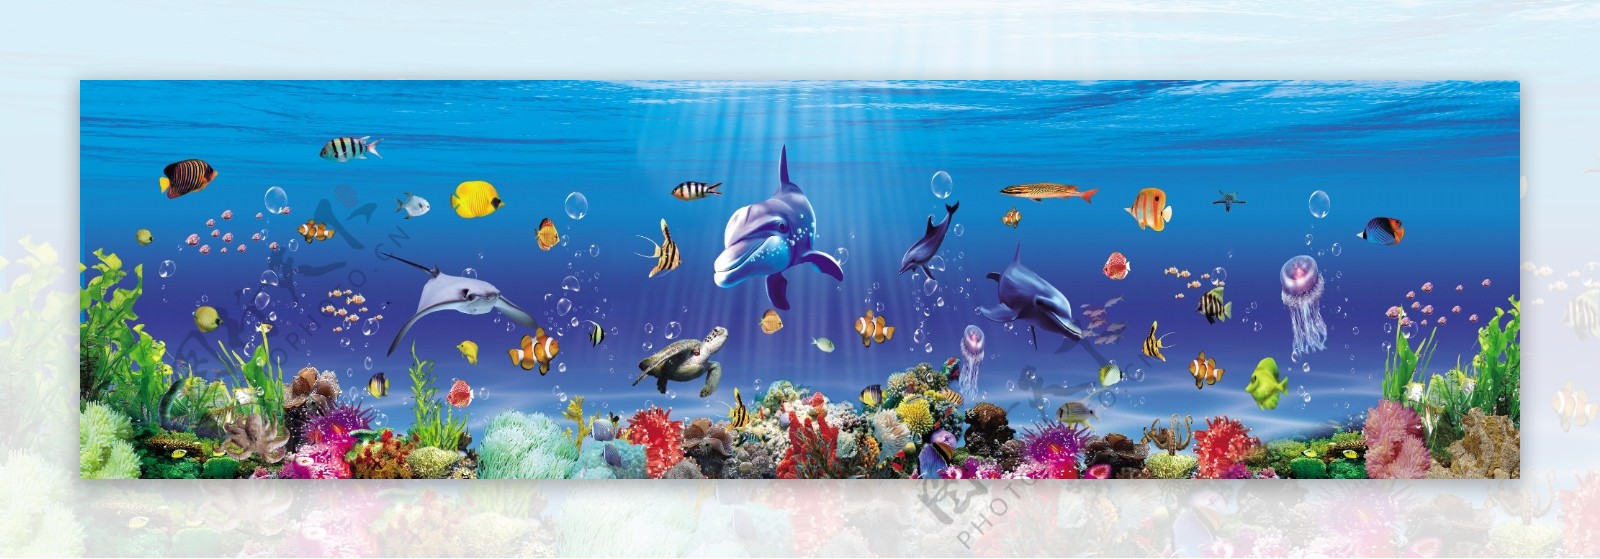 海底世界海报